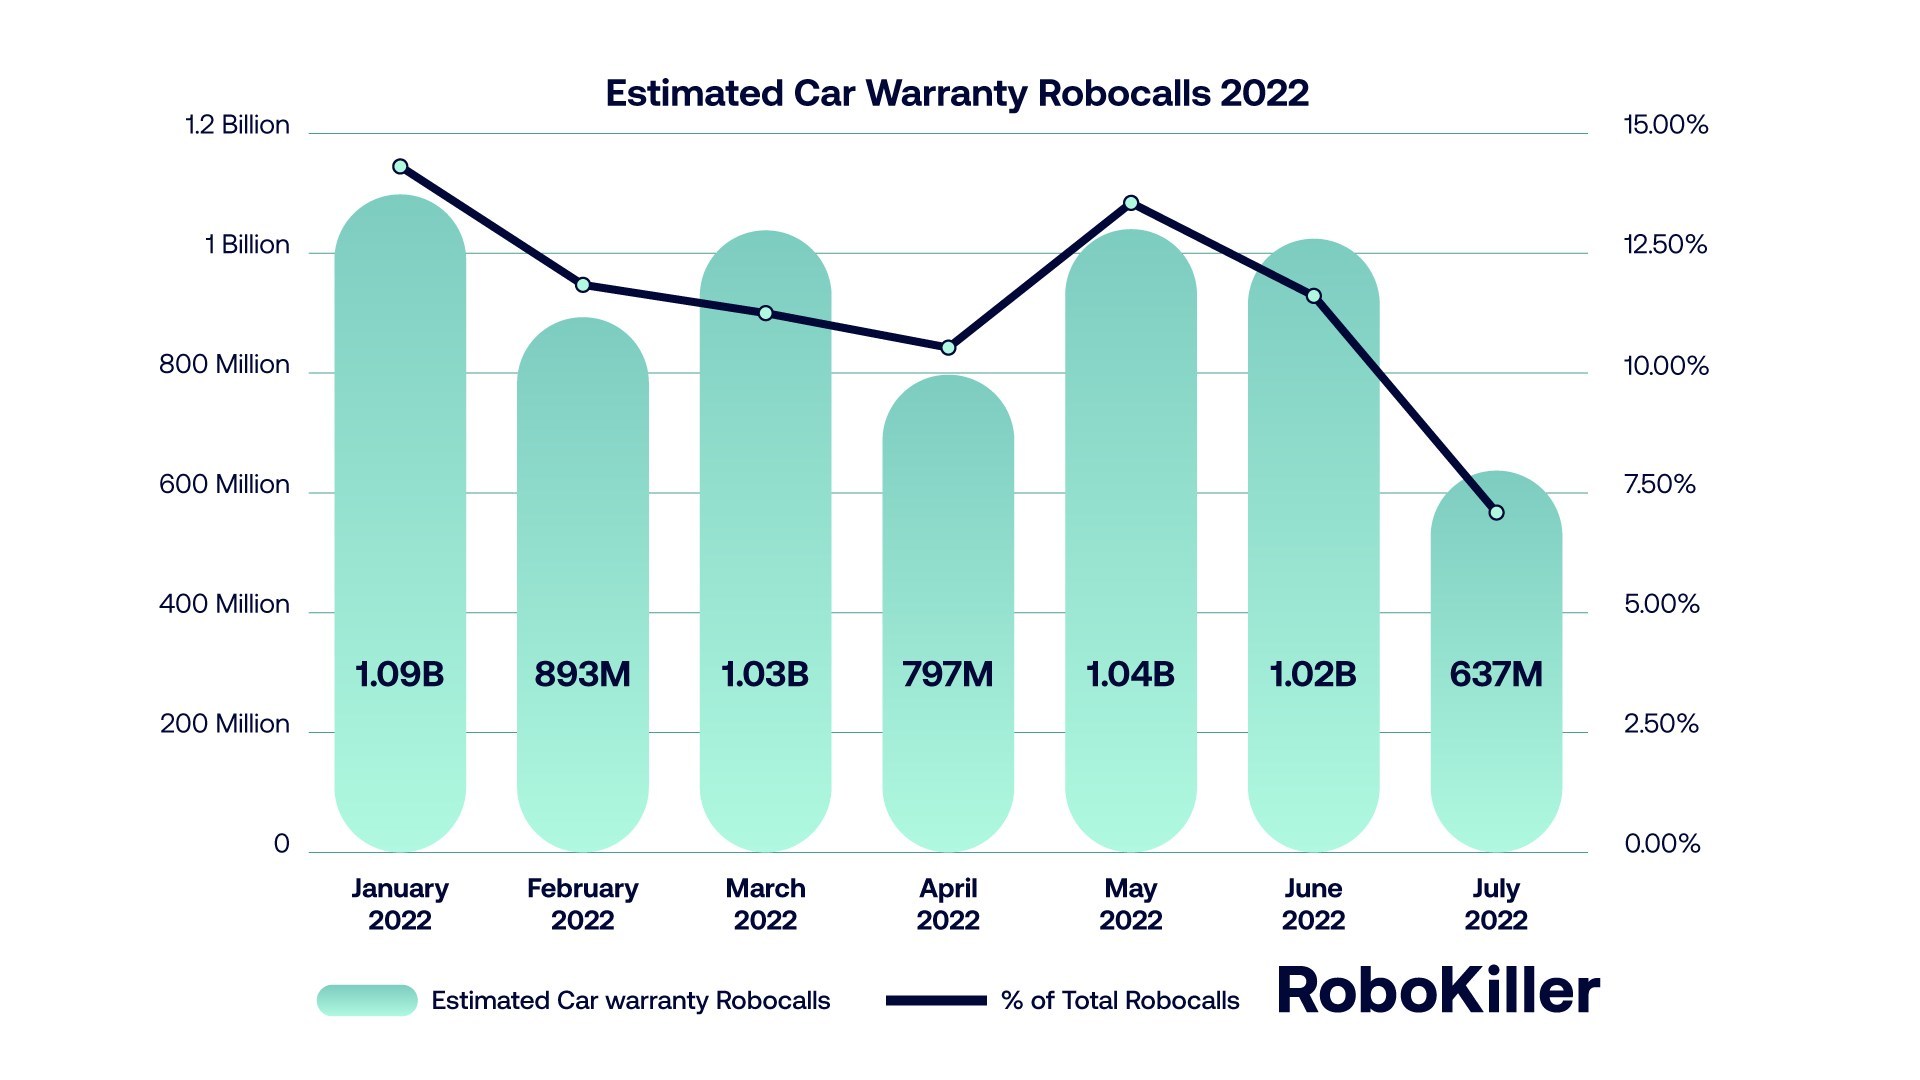 Estimated Car Warranty Robocalls 2022